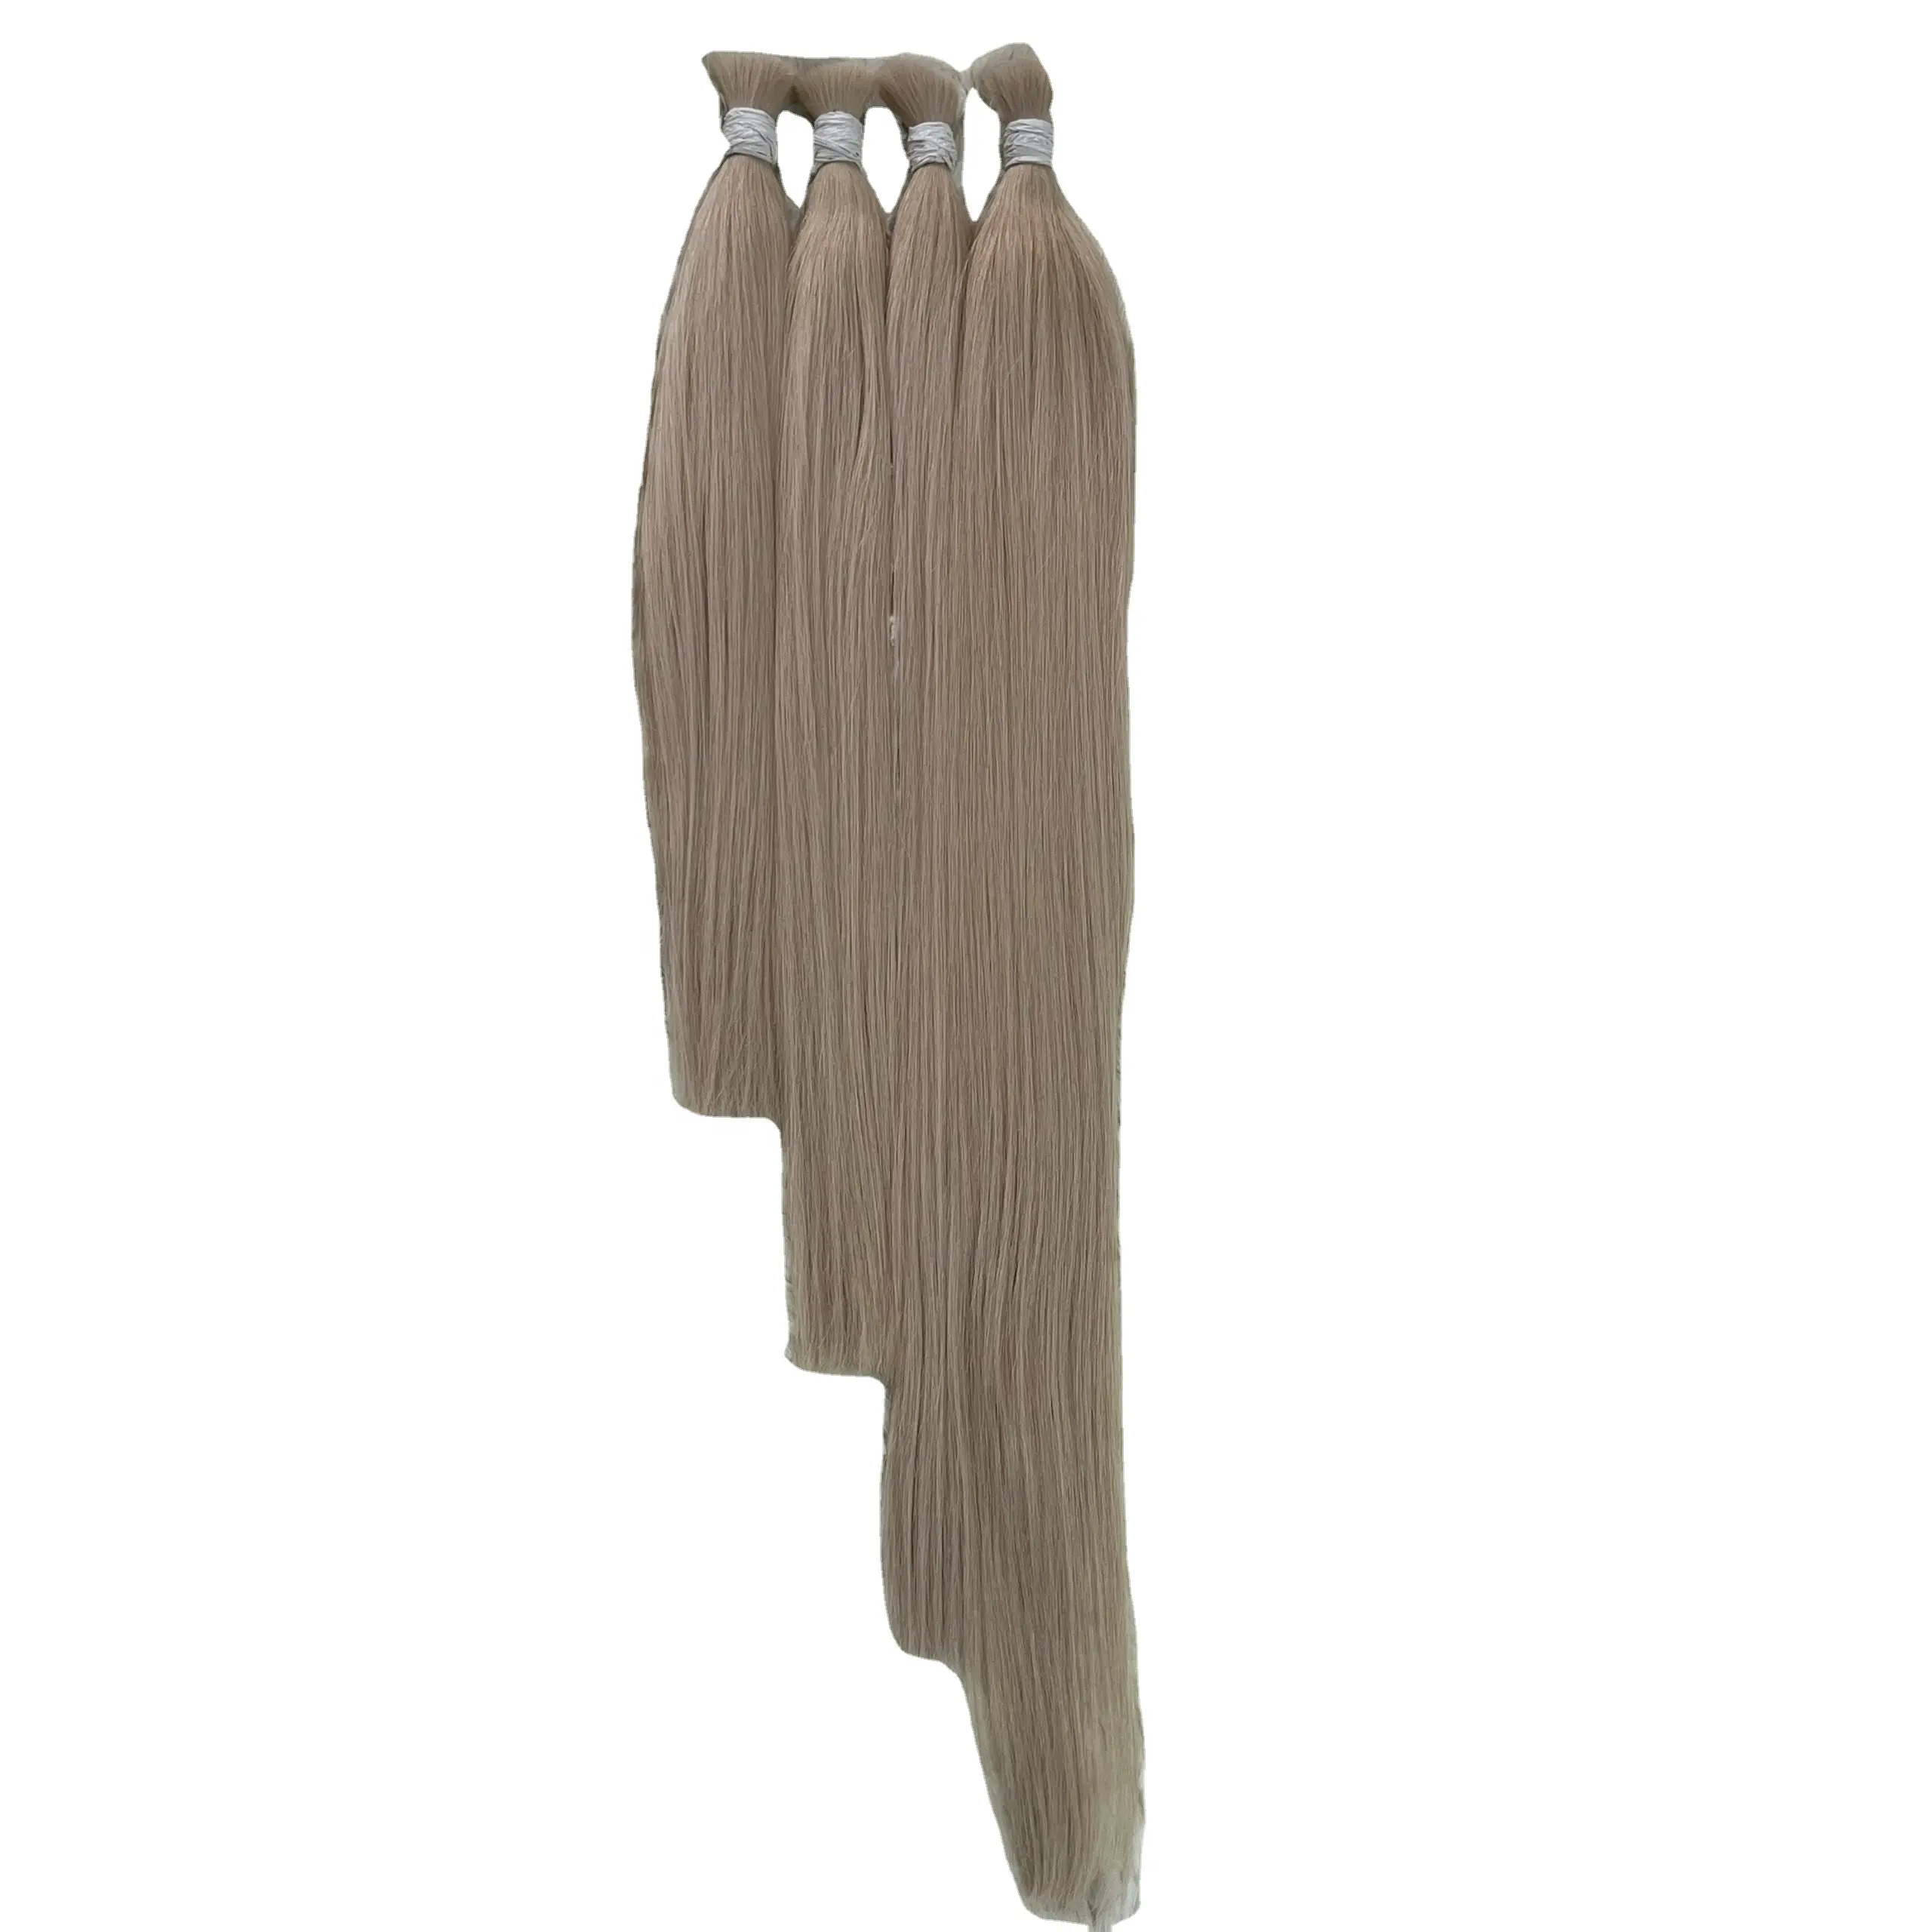 Verlängerung Bestes Express-Einzelspender-Bündel Großhandel farbiges Haar Seide und weiches natürliches vietnamesisches Haar knochengerades Haar Großhandel